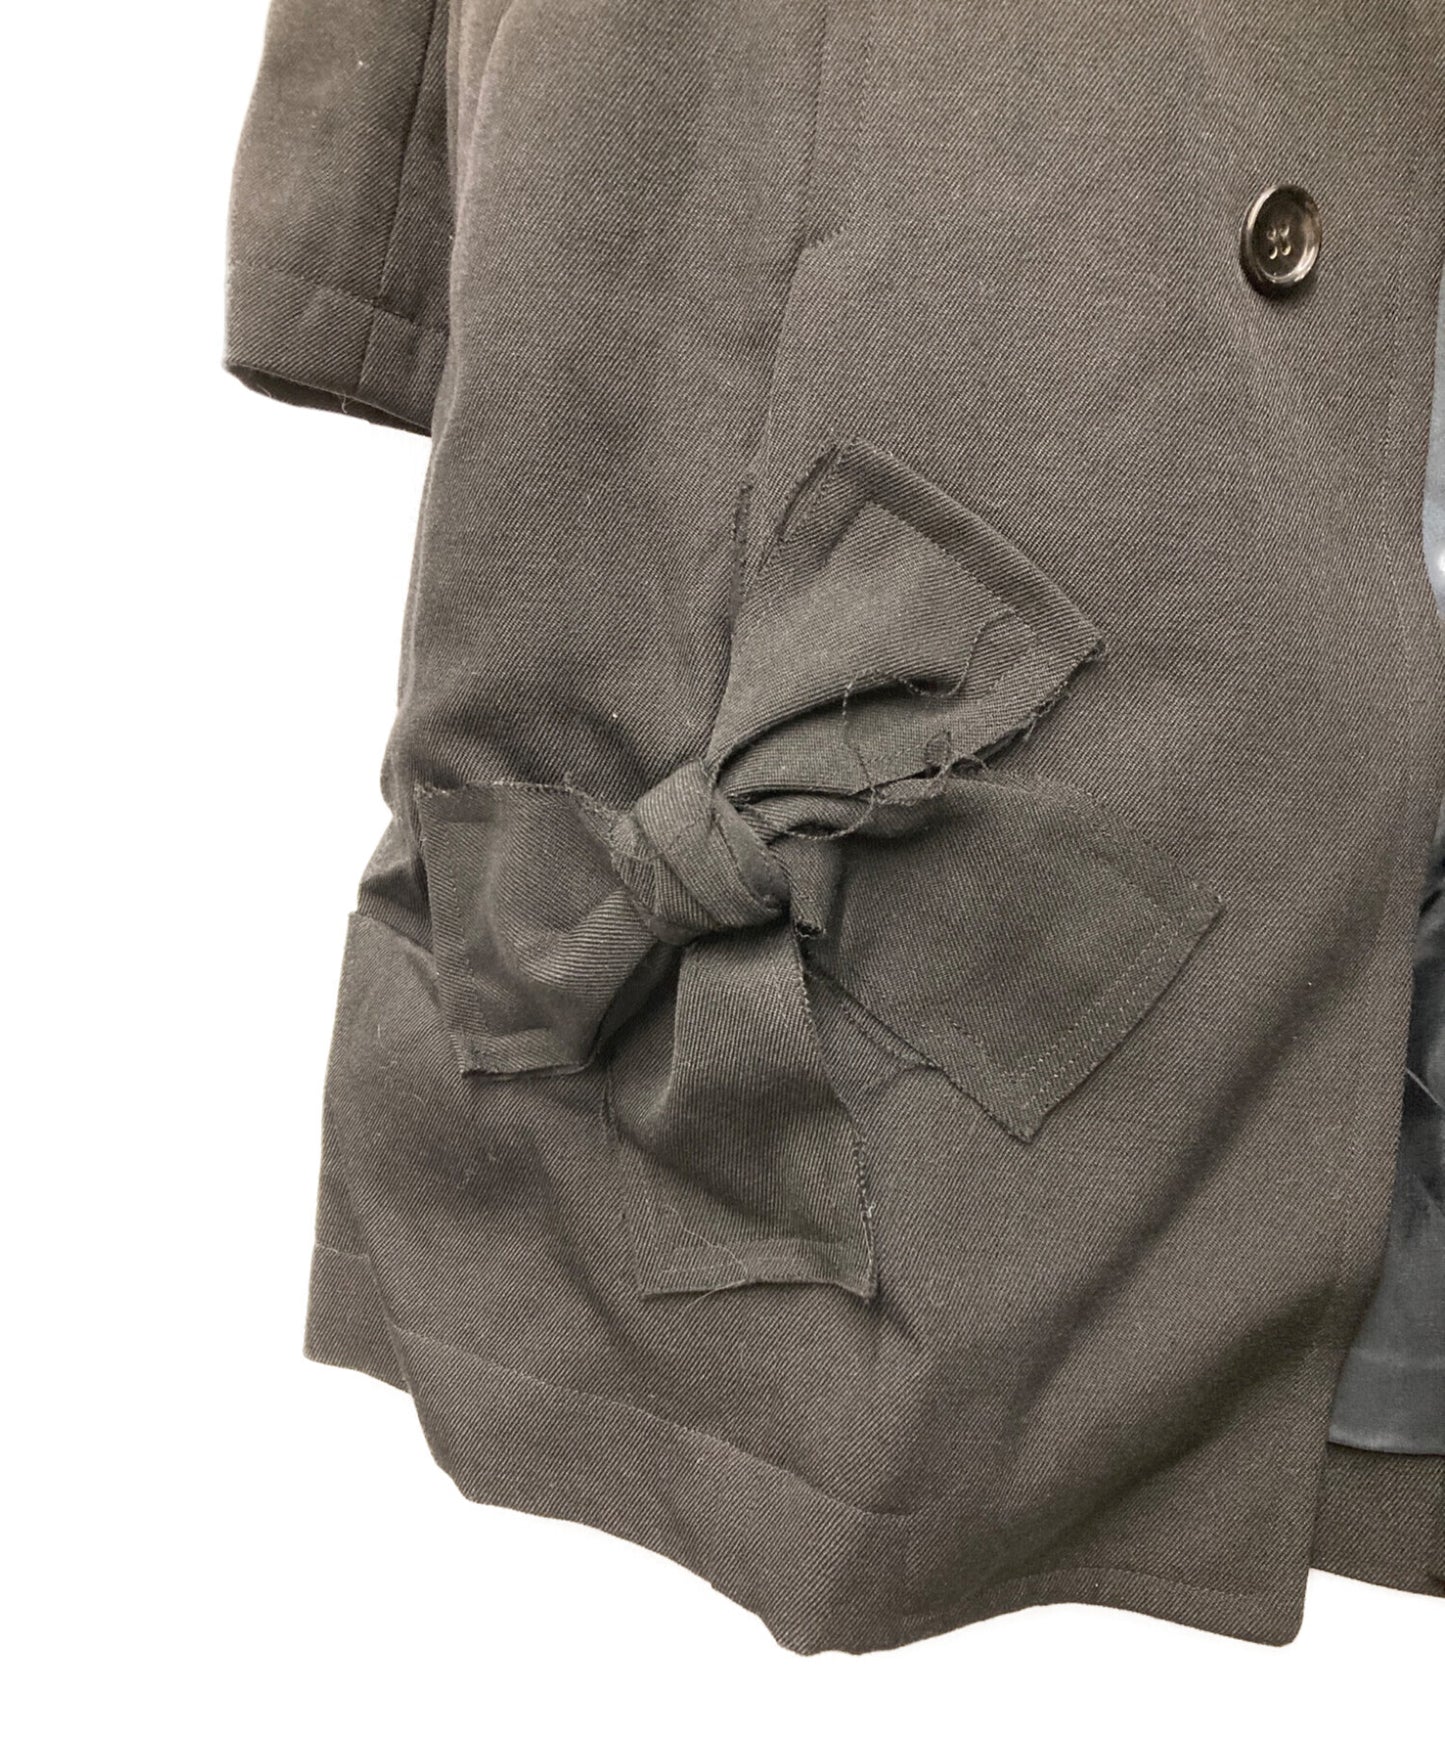 Robe de chambre comme des garcons用缎带装饰不锈钢衣领外套AD2003 RK-C005